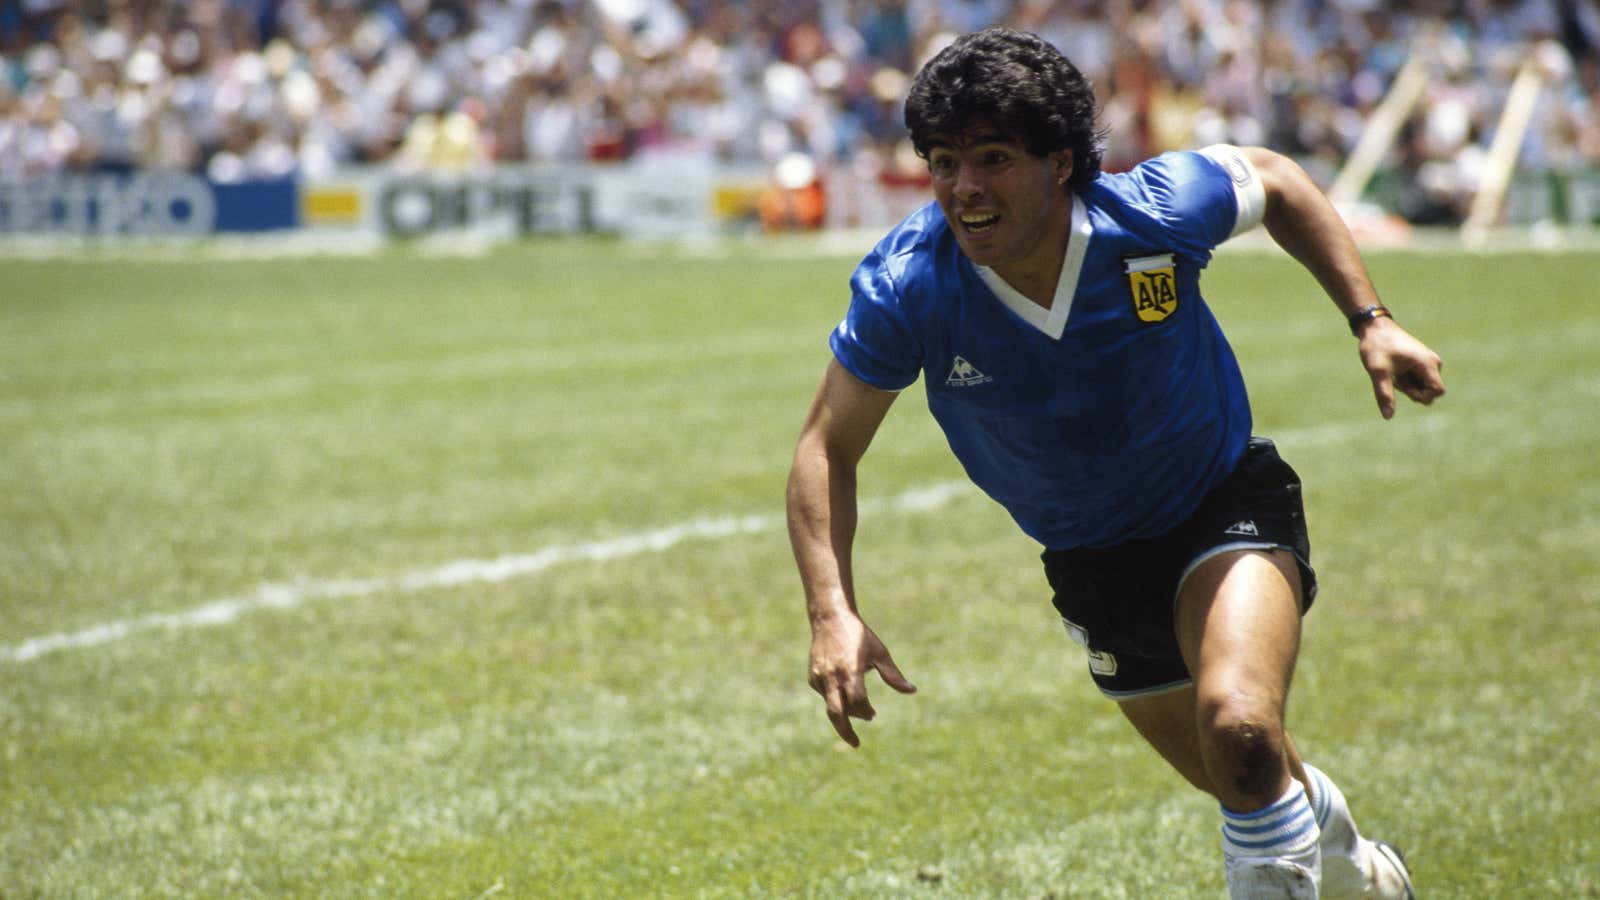 Diego Maradona, 1960-2020.